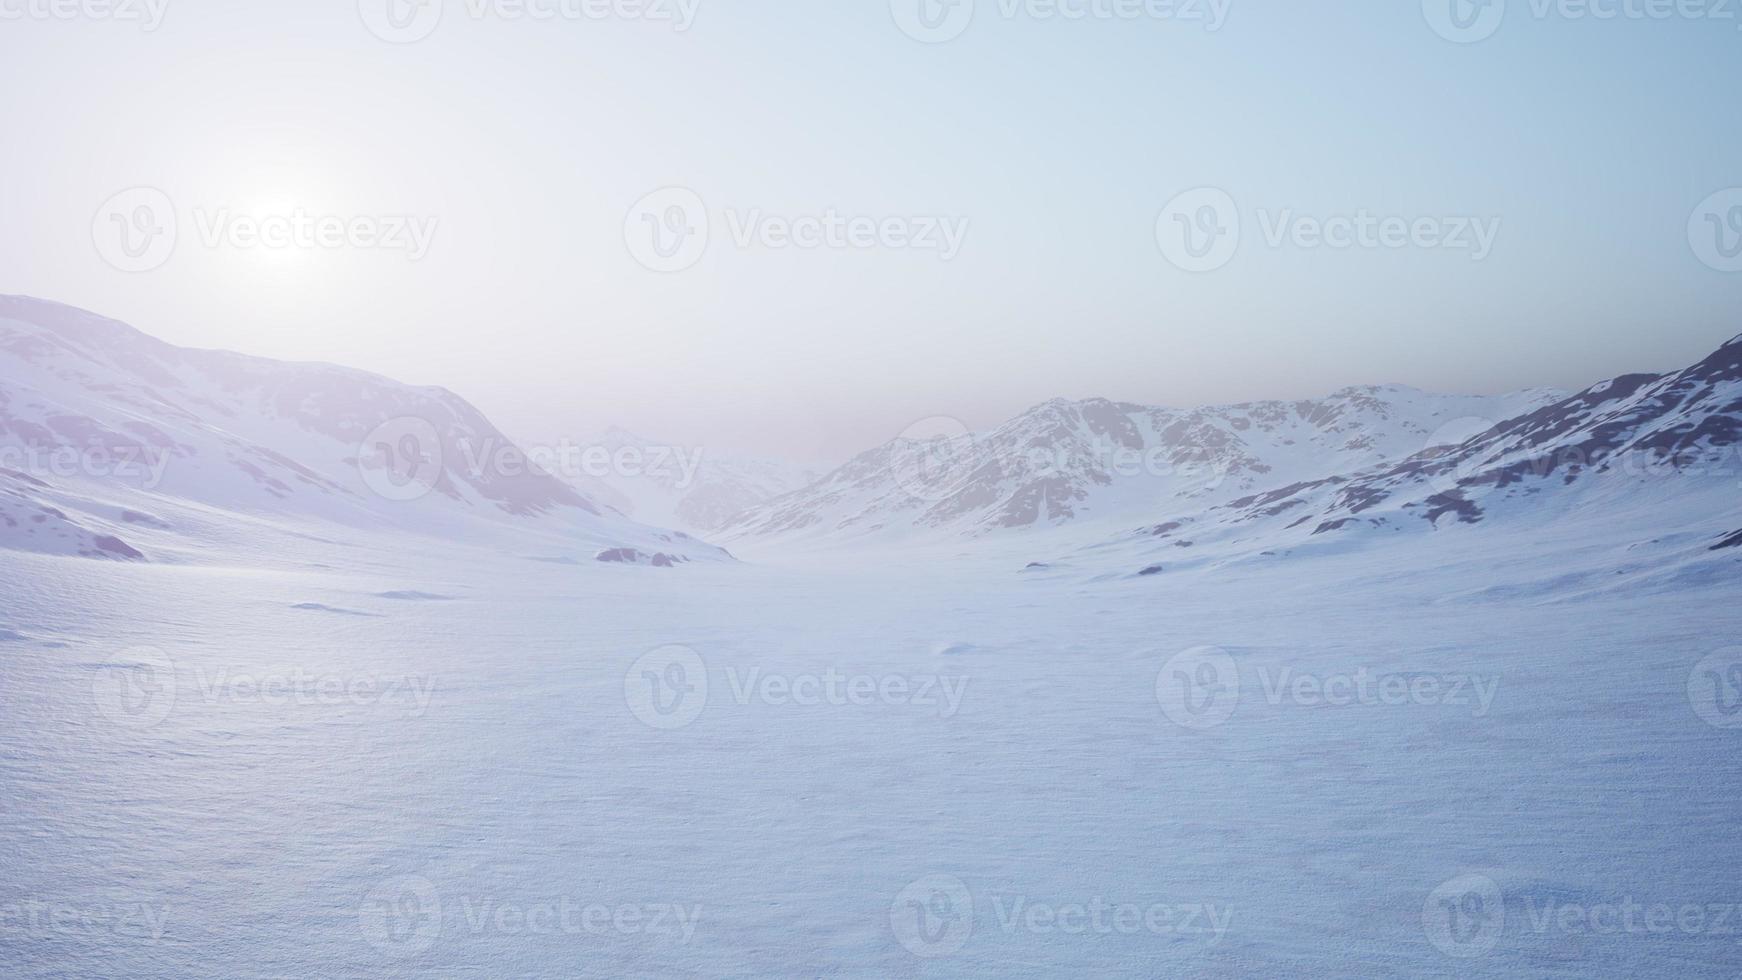 paisaje aéreo de montañas nevadas y costas heladas en la Antártida foto